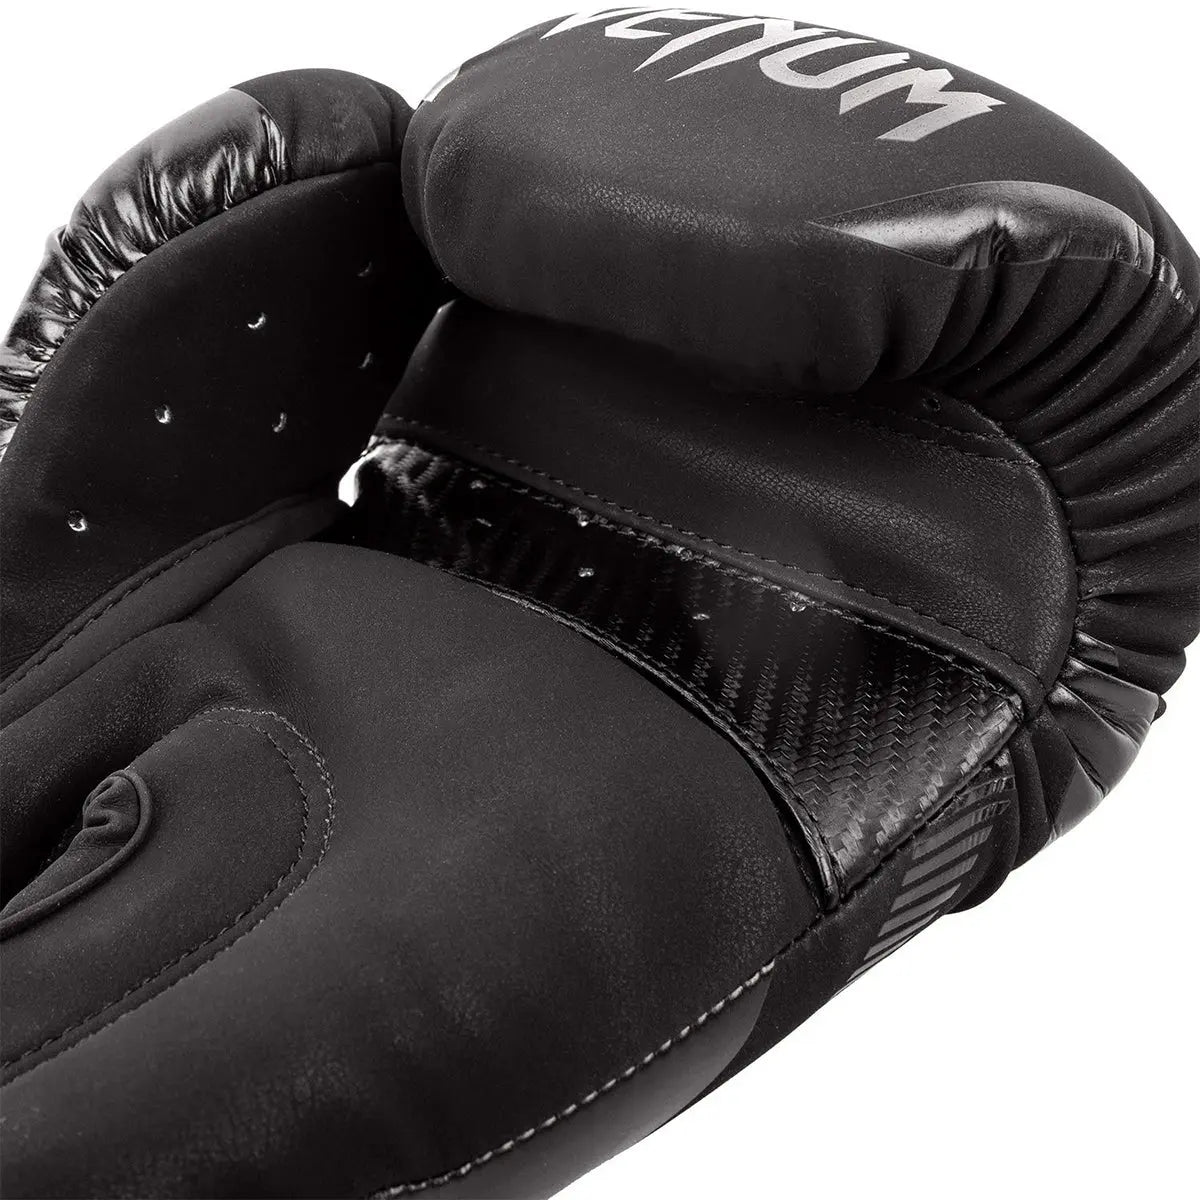 Venum Impact Training Boxing Gloves Venum